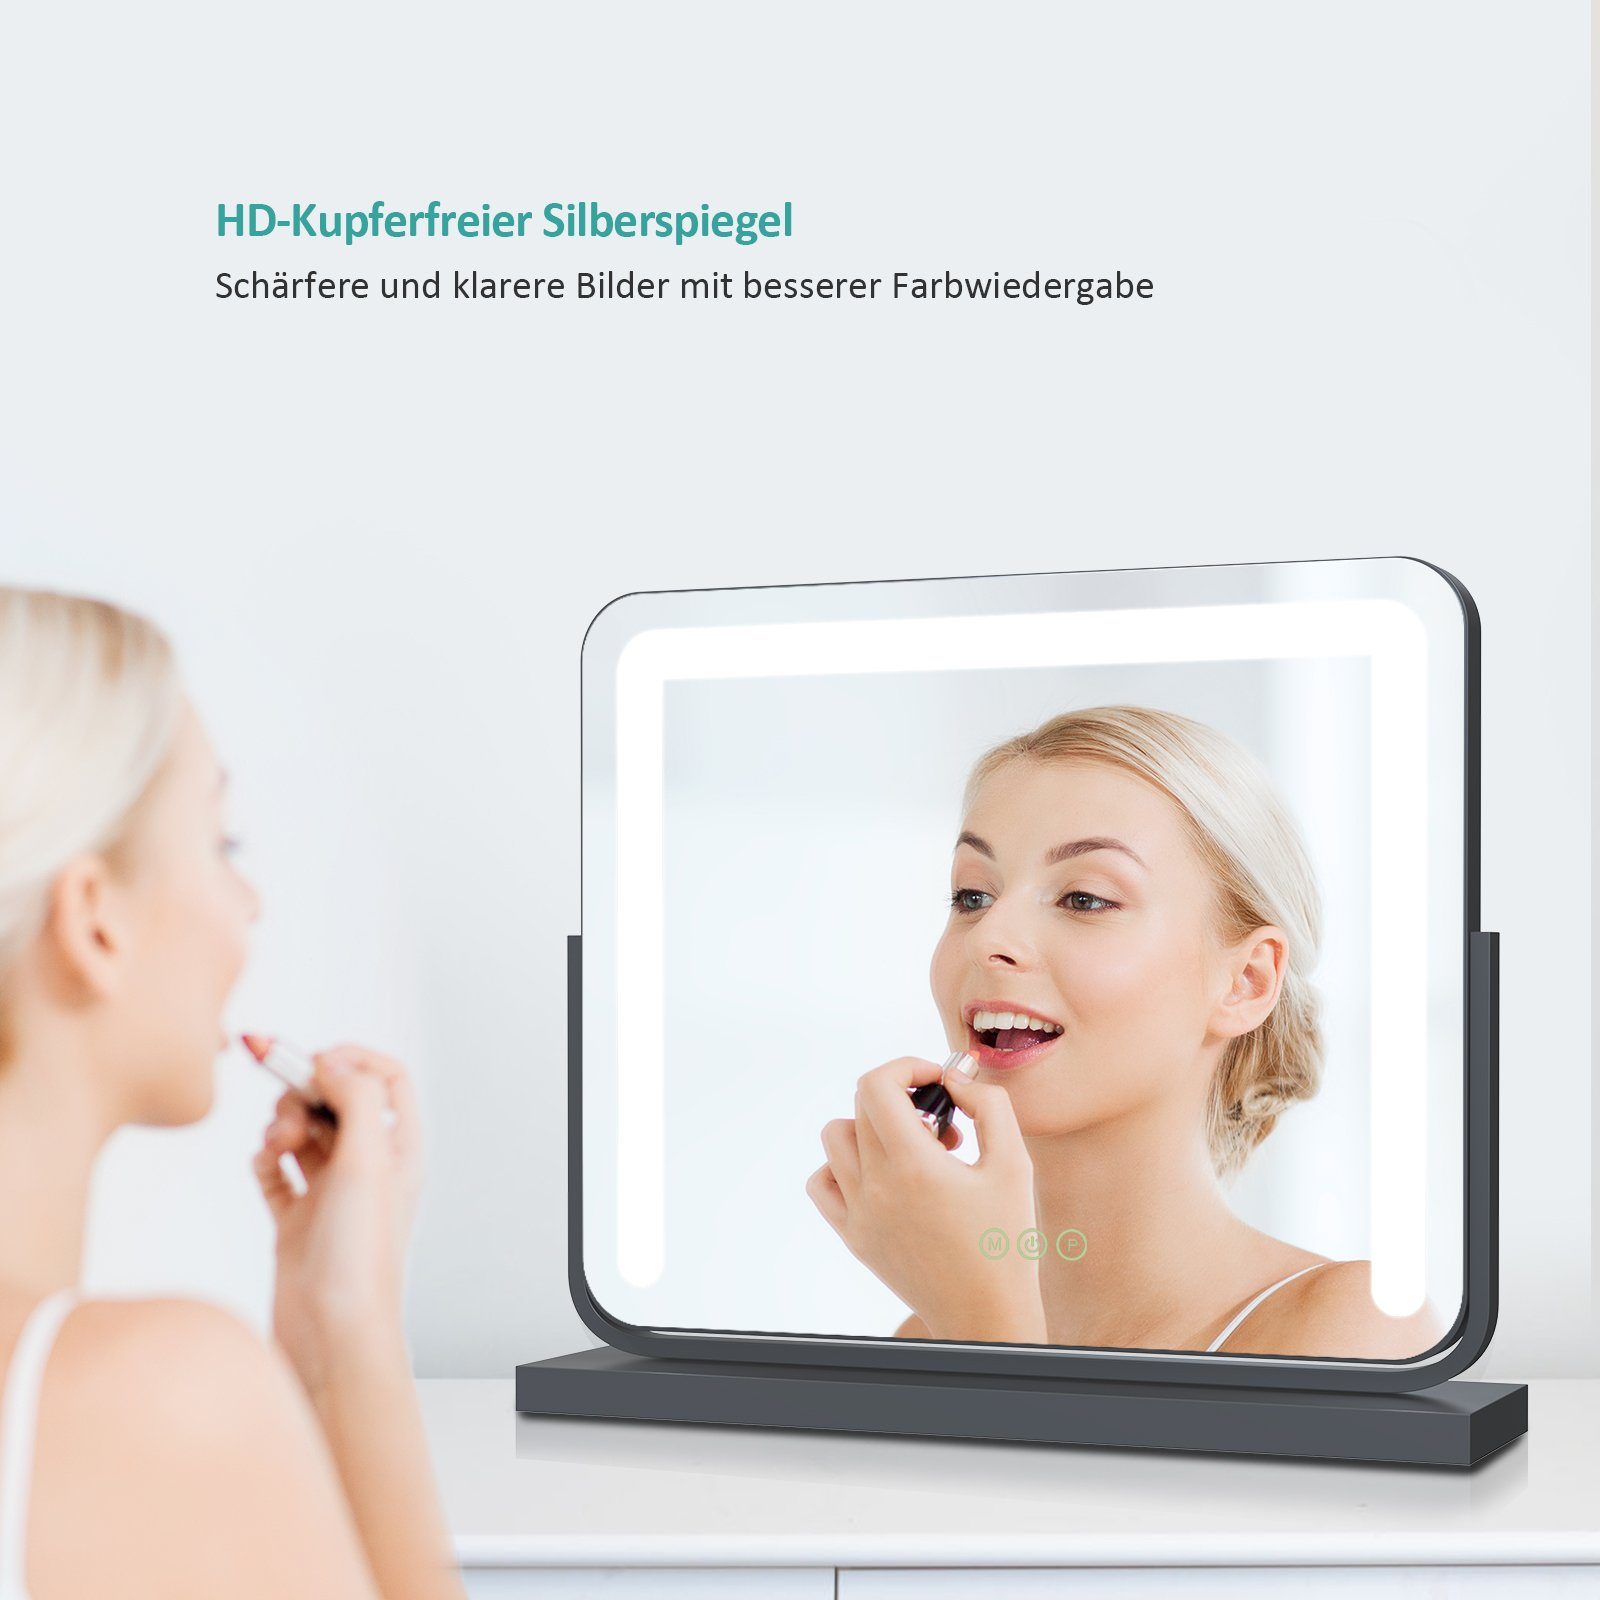 EMKE Kosmetikspiegel Schminkspiegel LED Kosmetikspiegel Memory-Funktion, Schwarz 3 Beleuchtung 360° Touch, Drehbar Tischspiegel, mit mit Dimmbar, Lichtfarben